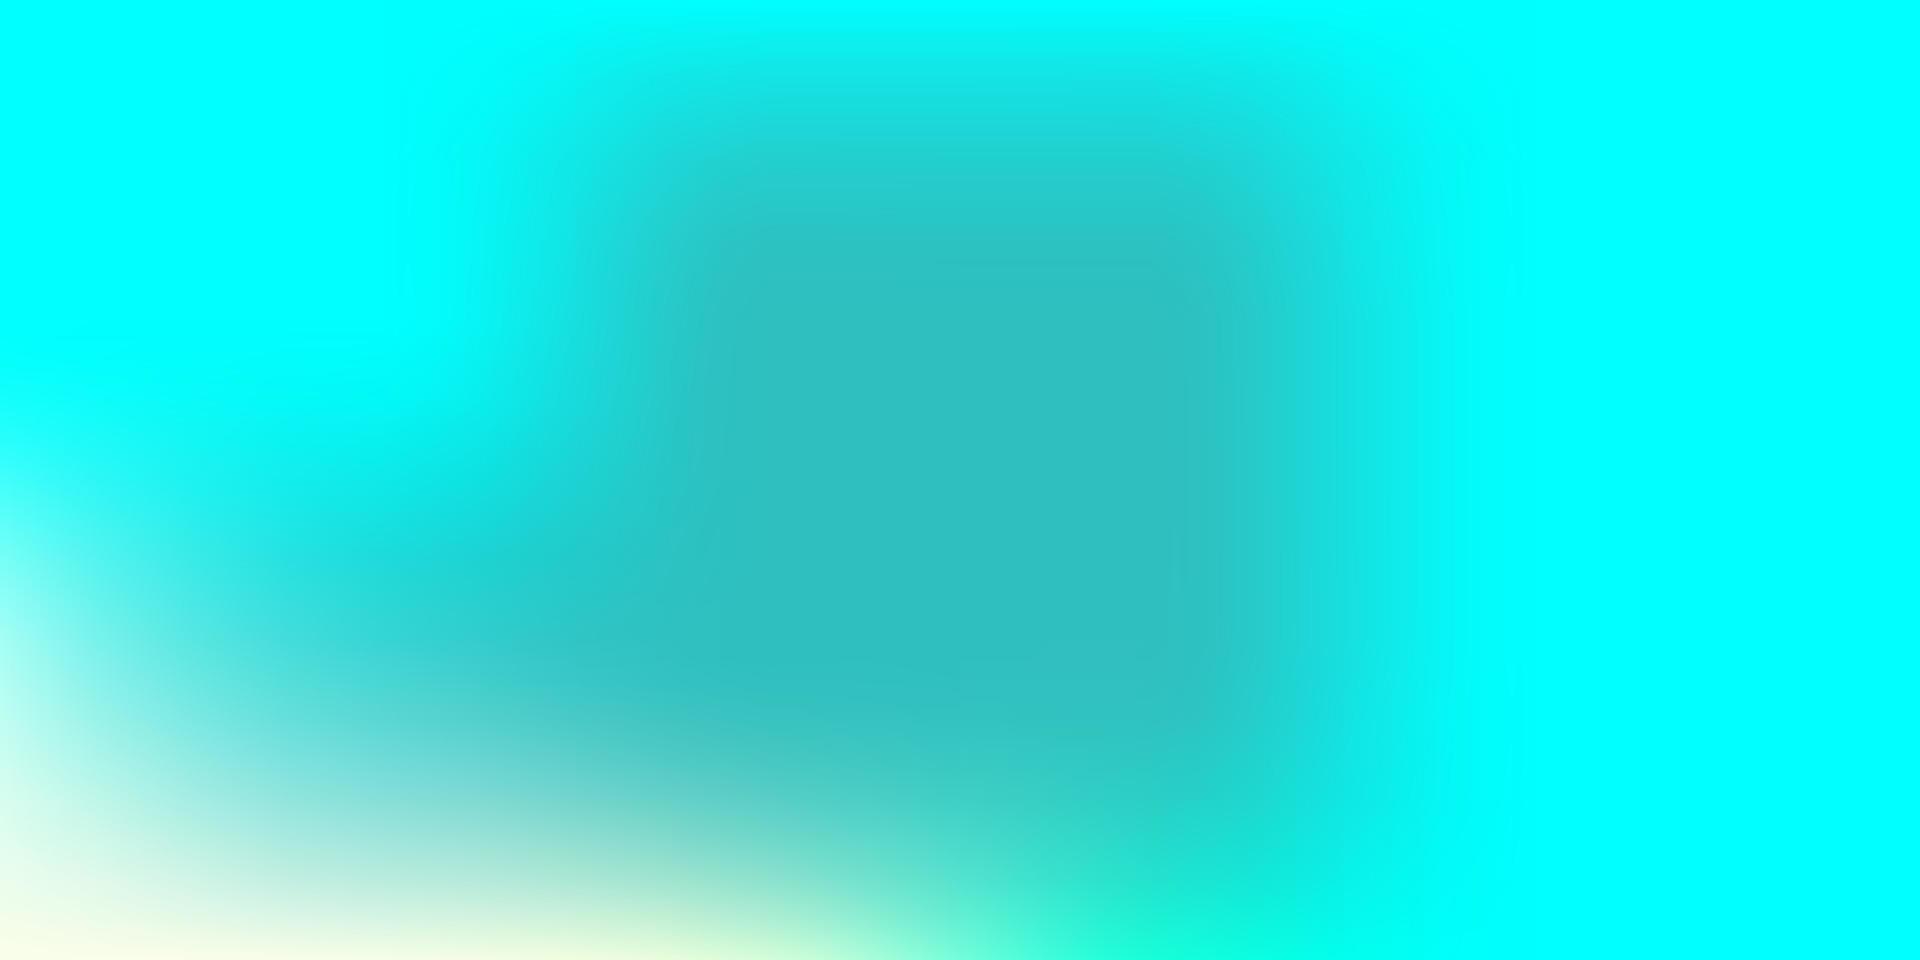 Light Blue, Green vector blur template.